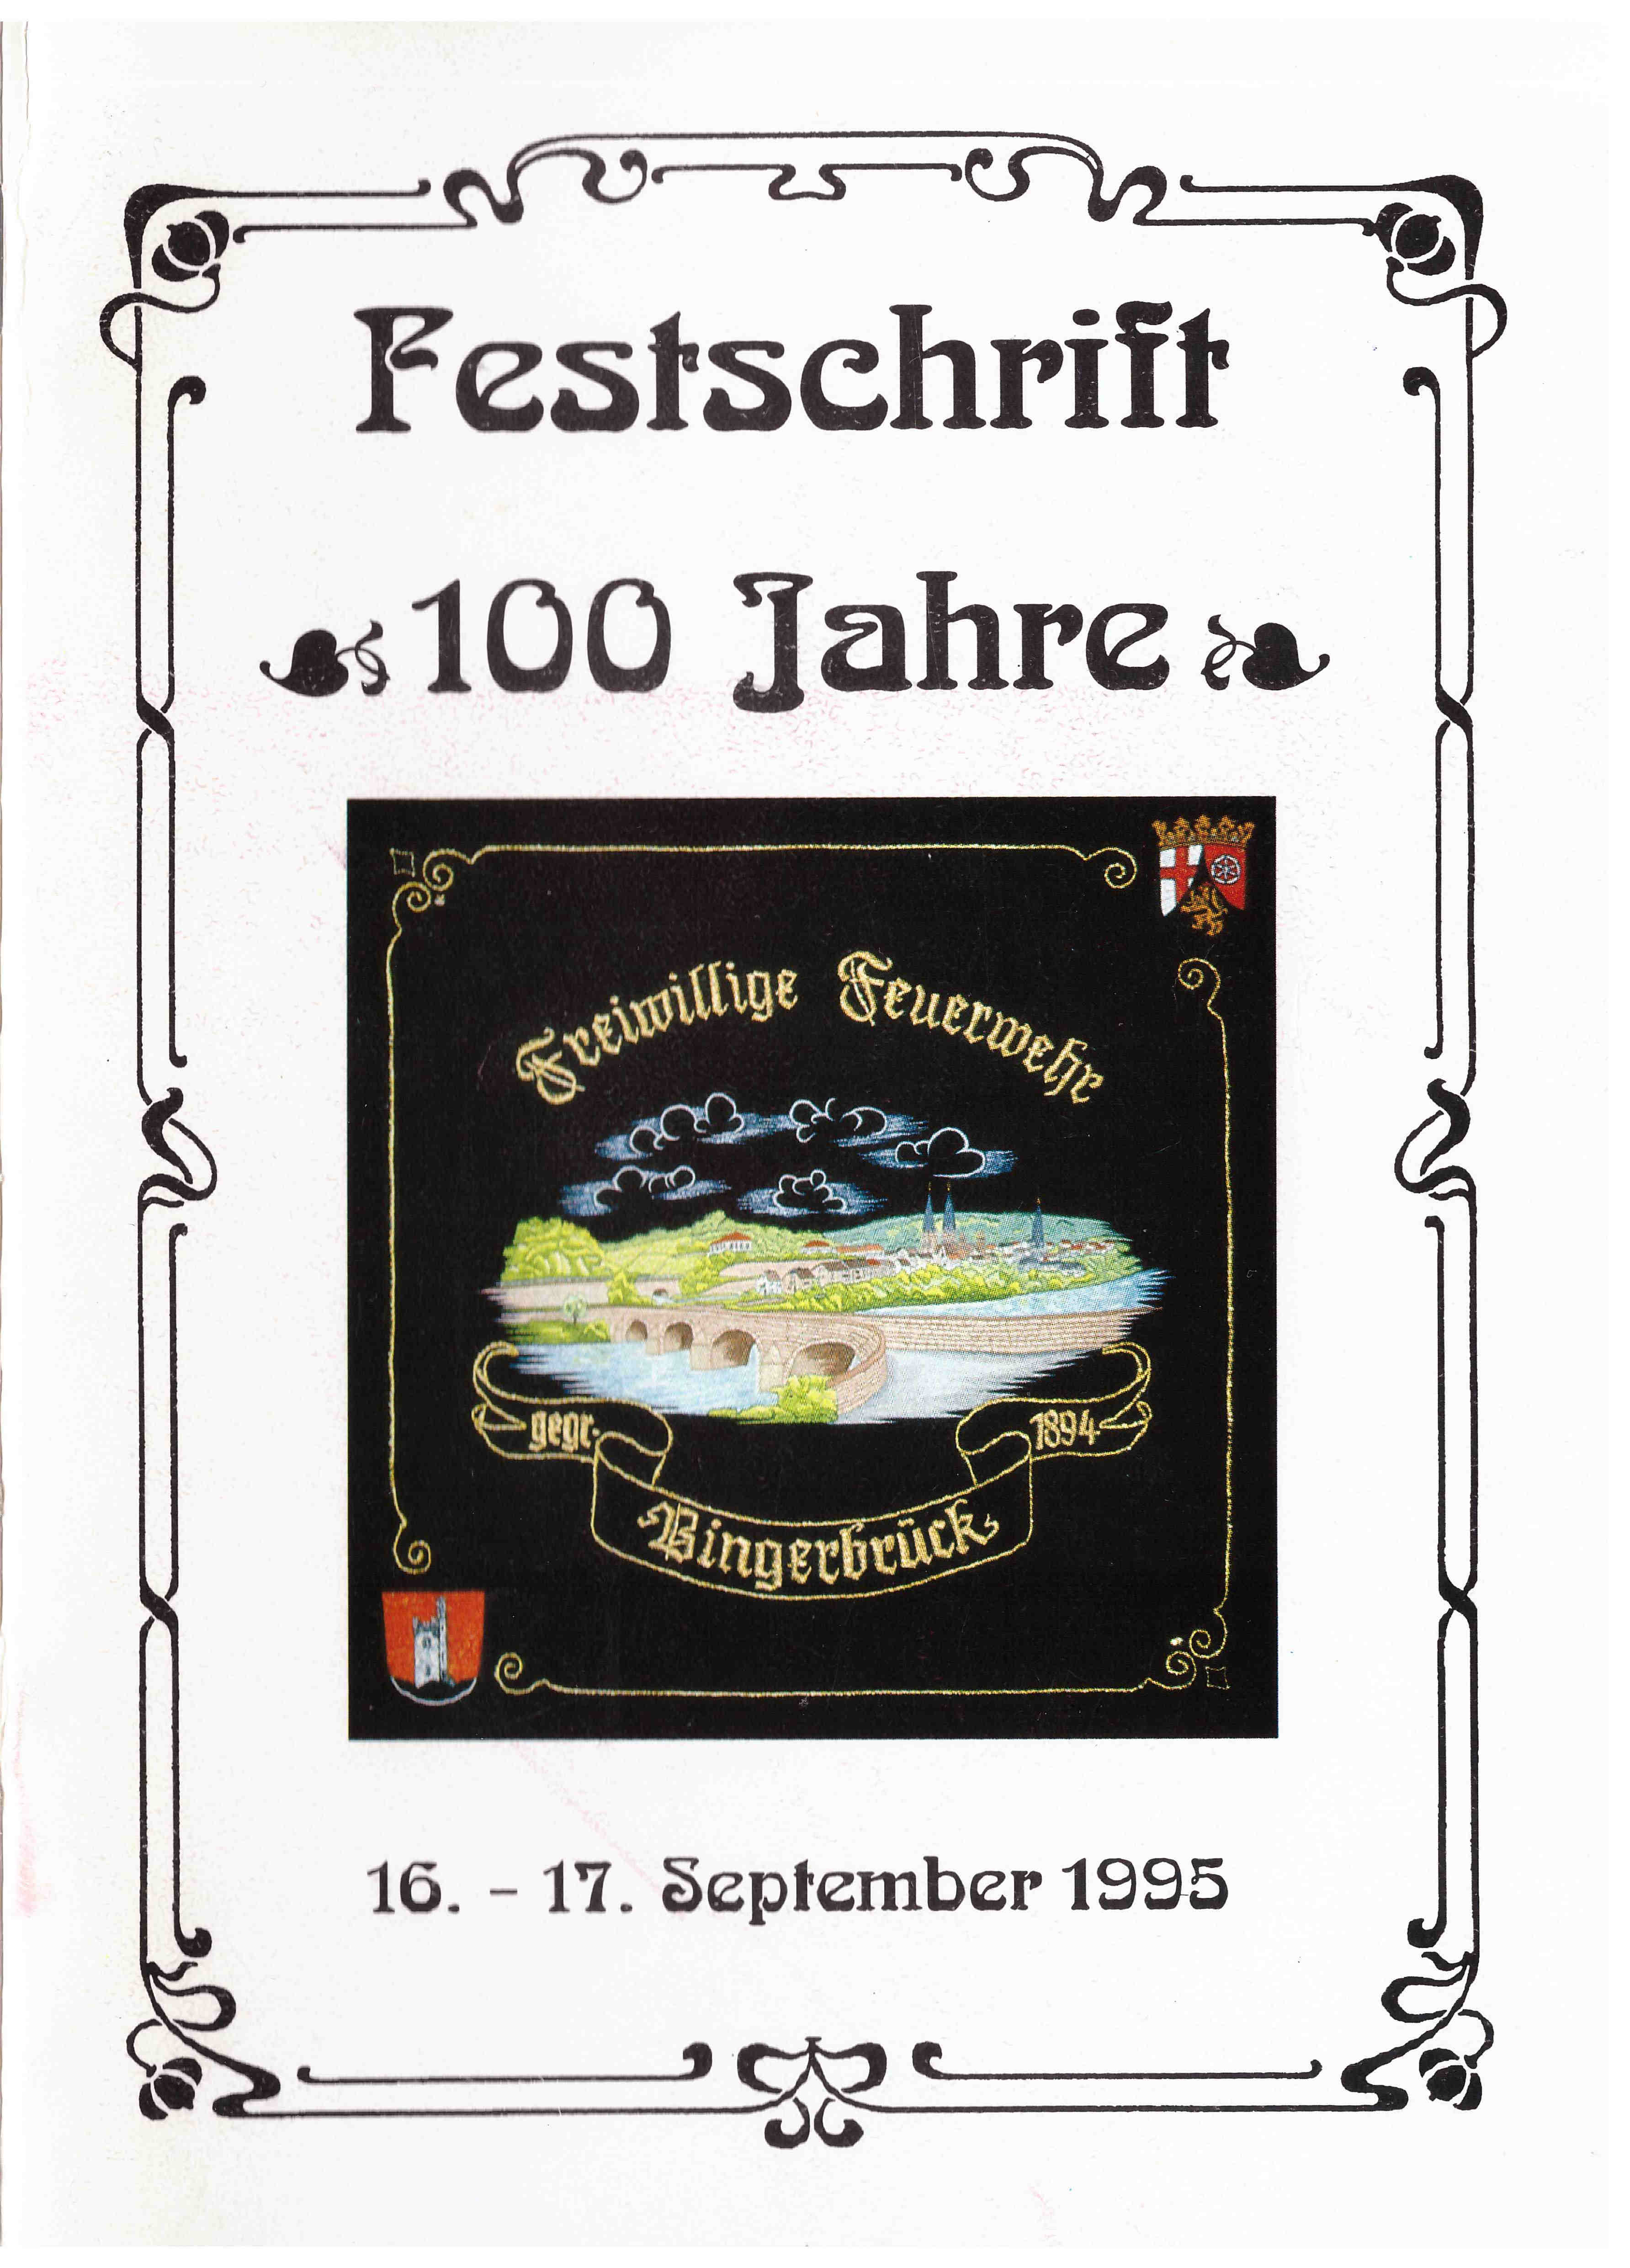 Festschrift 100 Jahre 1995